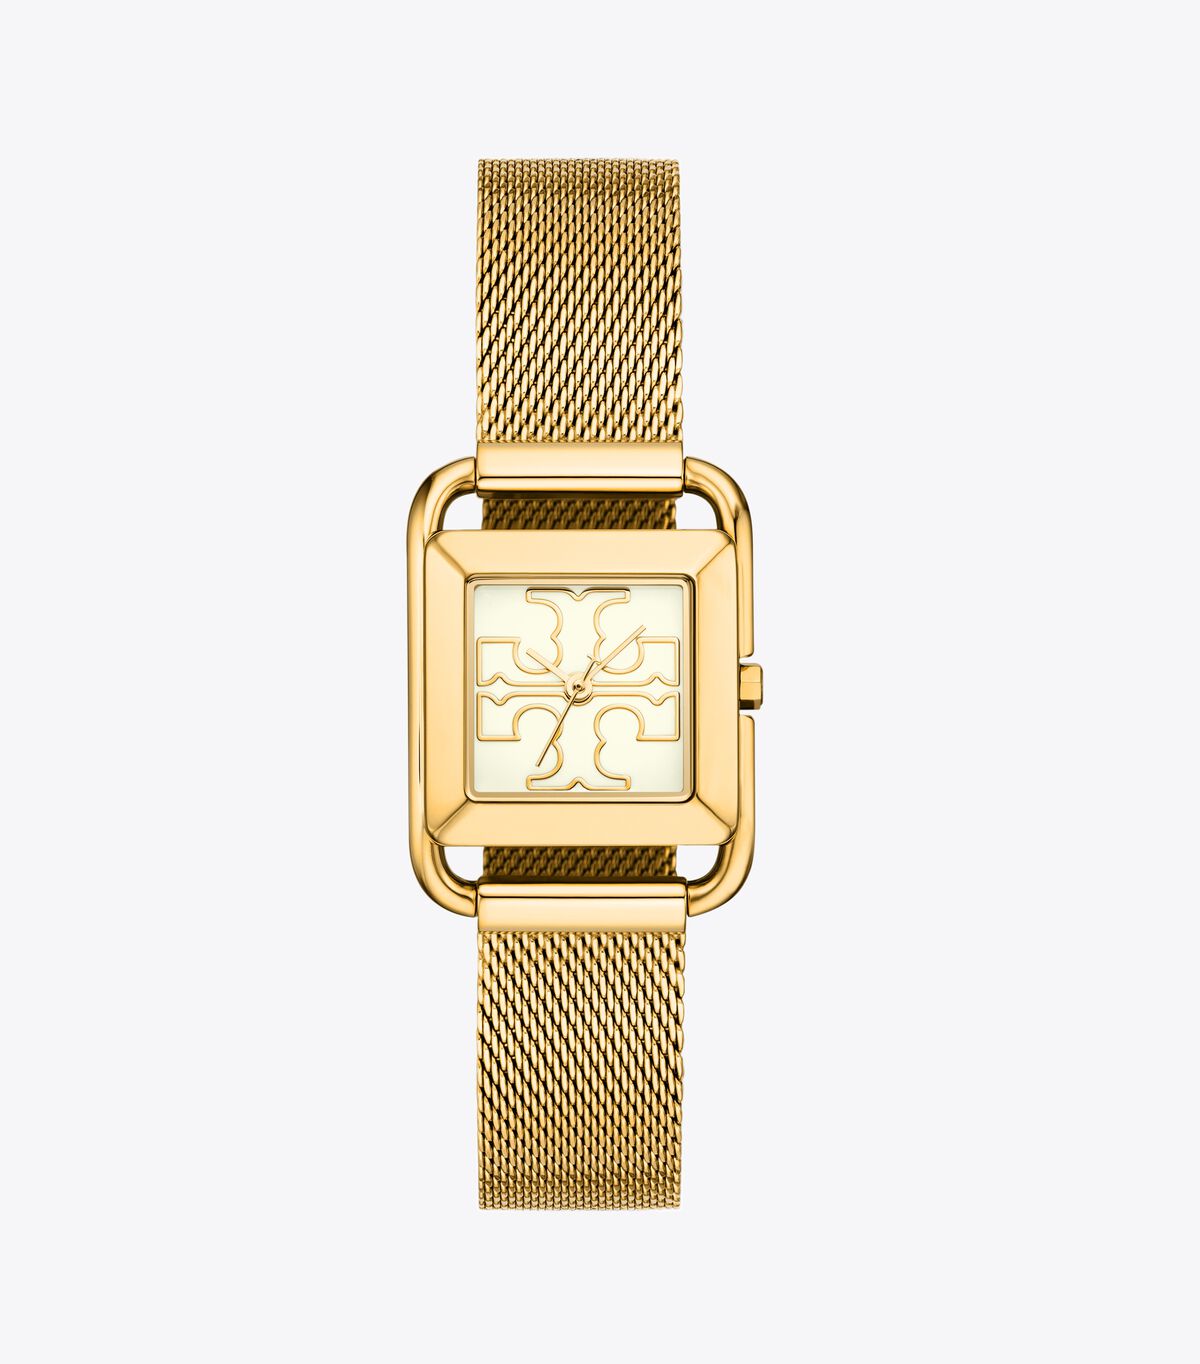 ساعة ميلر، شبكية/ذهبية اللون من الفولاذ المقاوم للصدأ